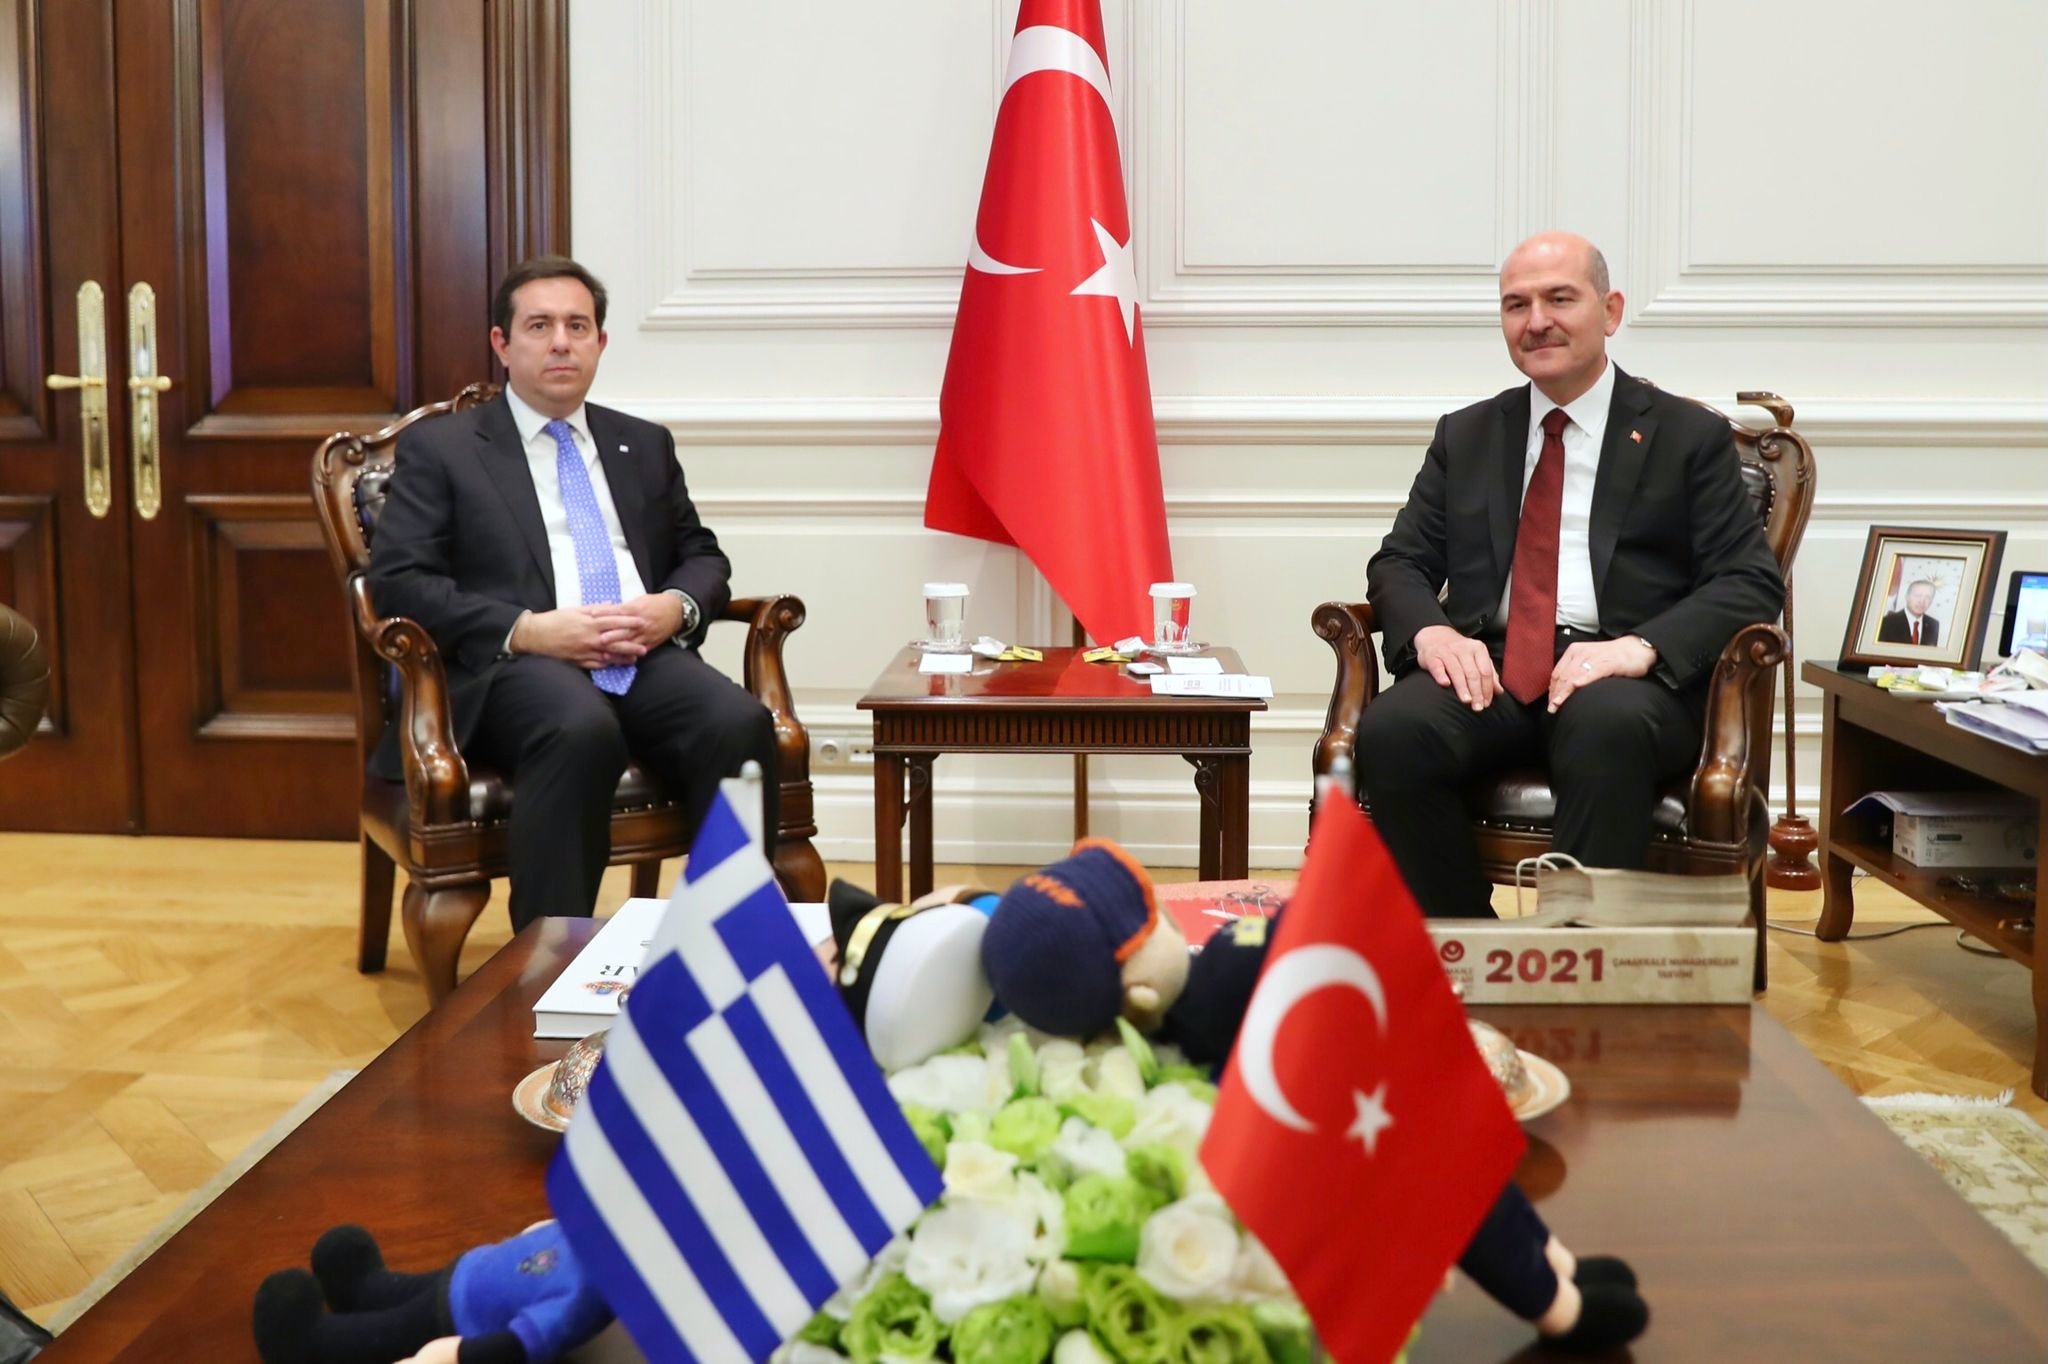 Συνάντηση Υπουργού Μετανάστευσης και Ασύλου, Ν. Μηταράκη, με τον Υπουργό Εσωτερικών της Τουρκίας, Σουλεϊμάν Σοϊλού στην Άγκυρα